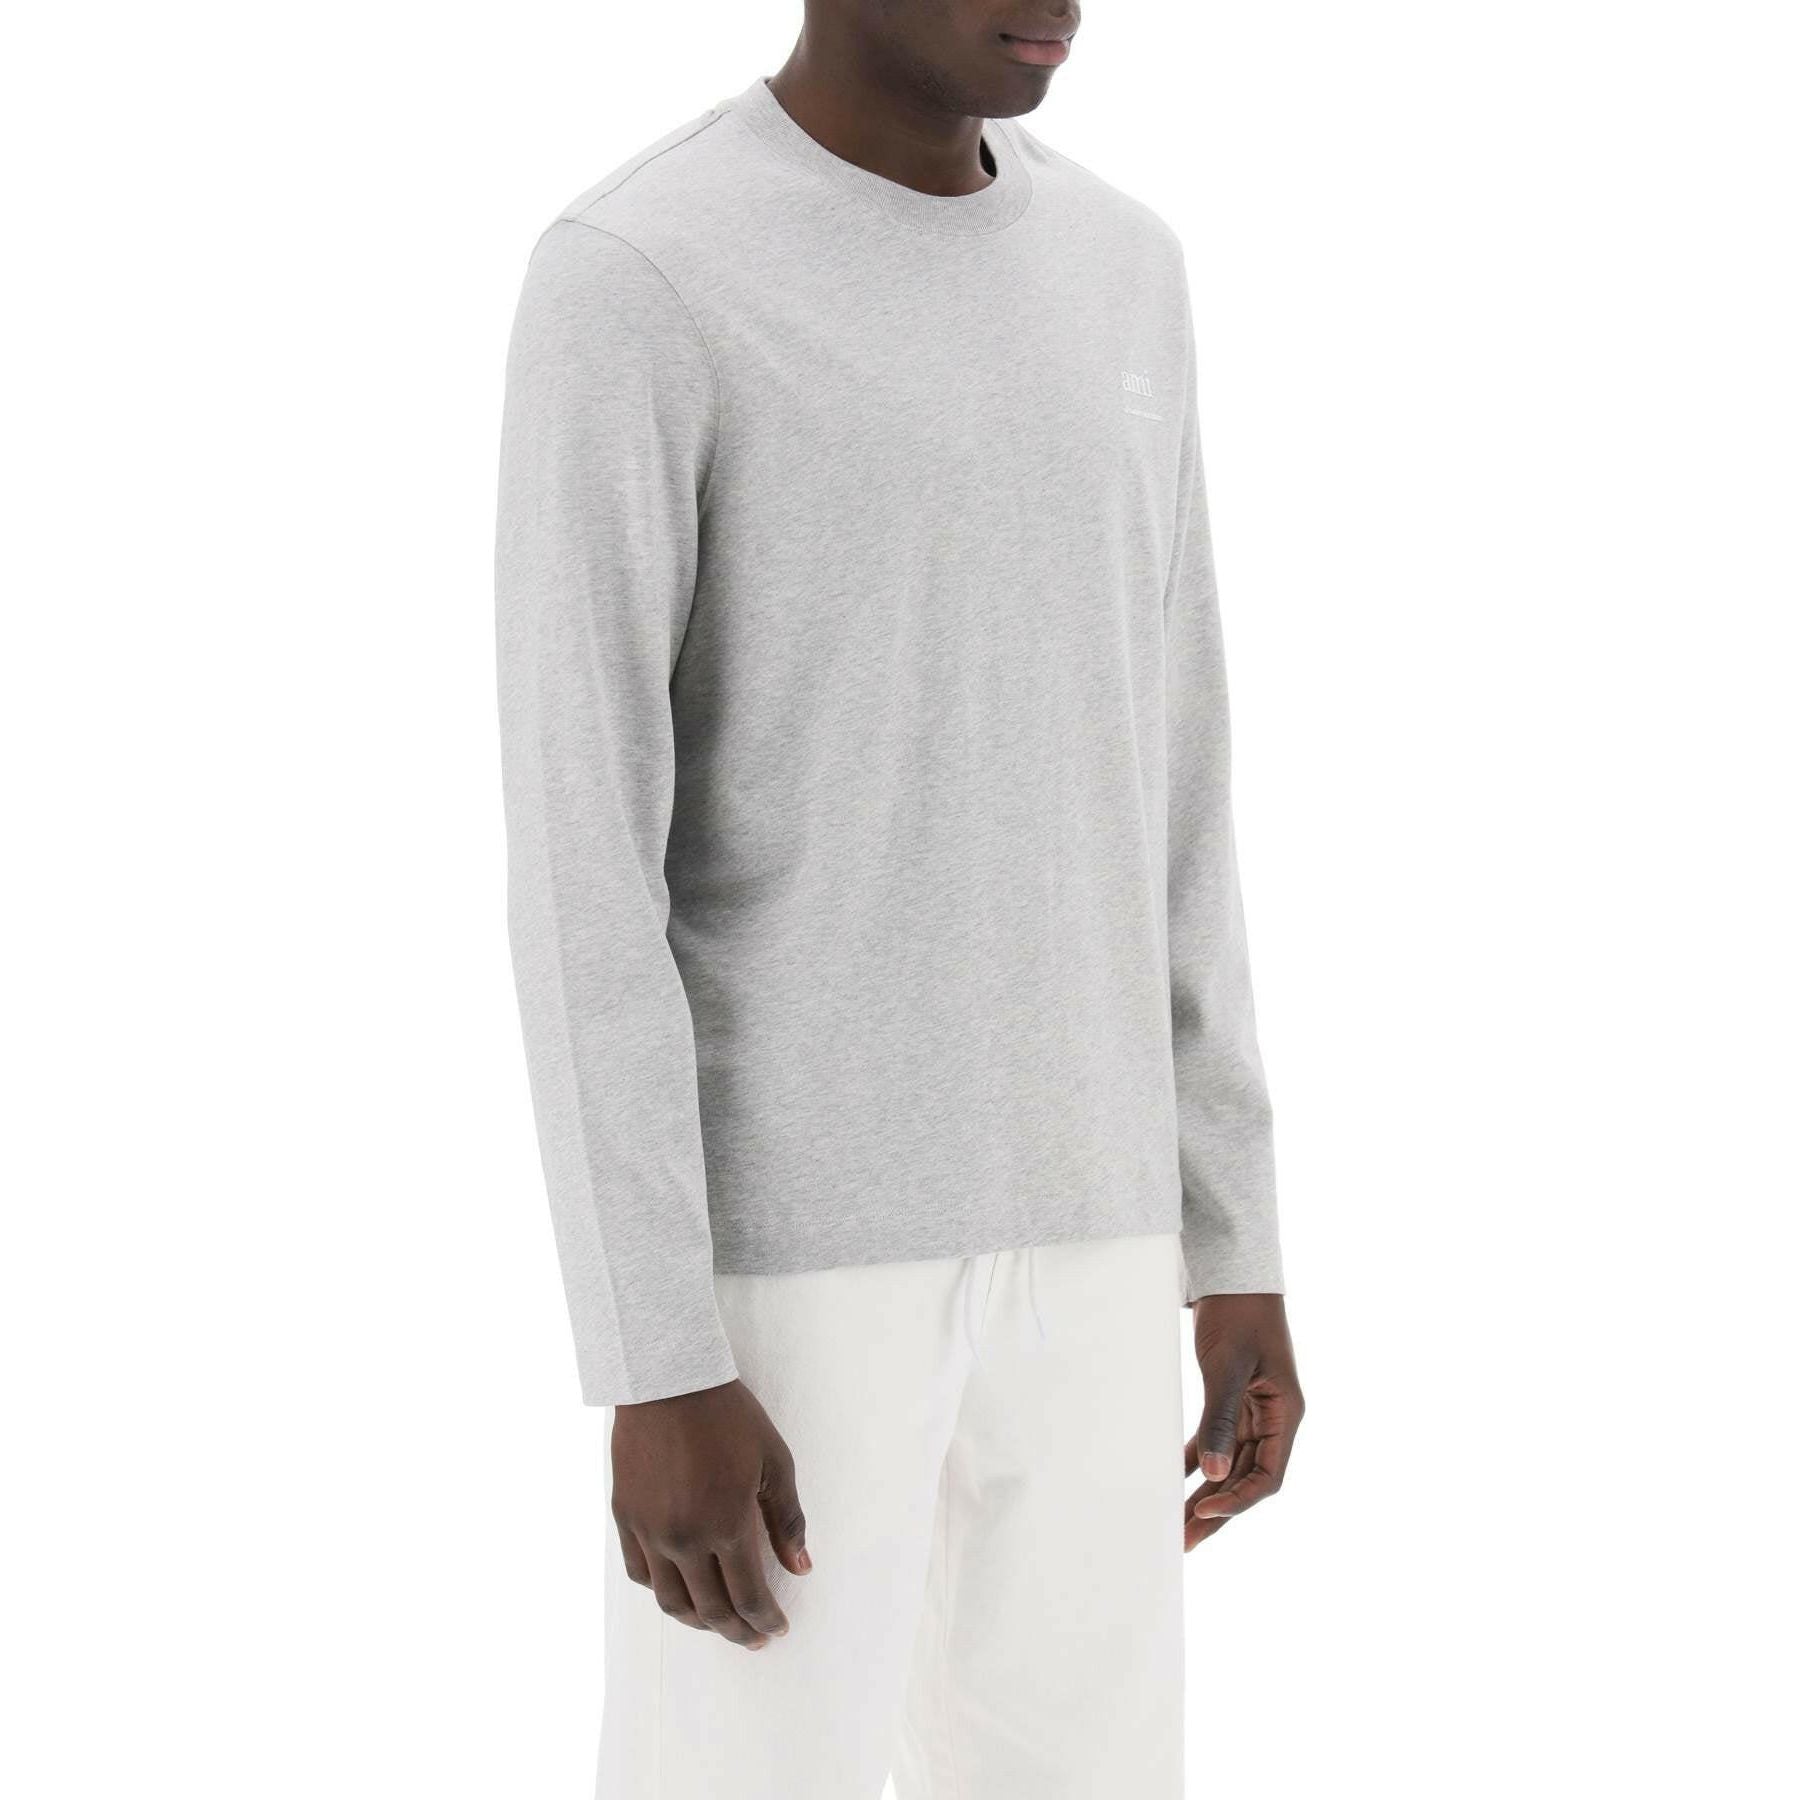 Long Sleeved Cotton T-Shirt AMI ALEXANDRE MATIUSSI JOHN JULIA.